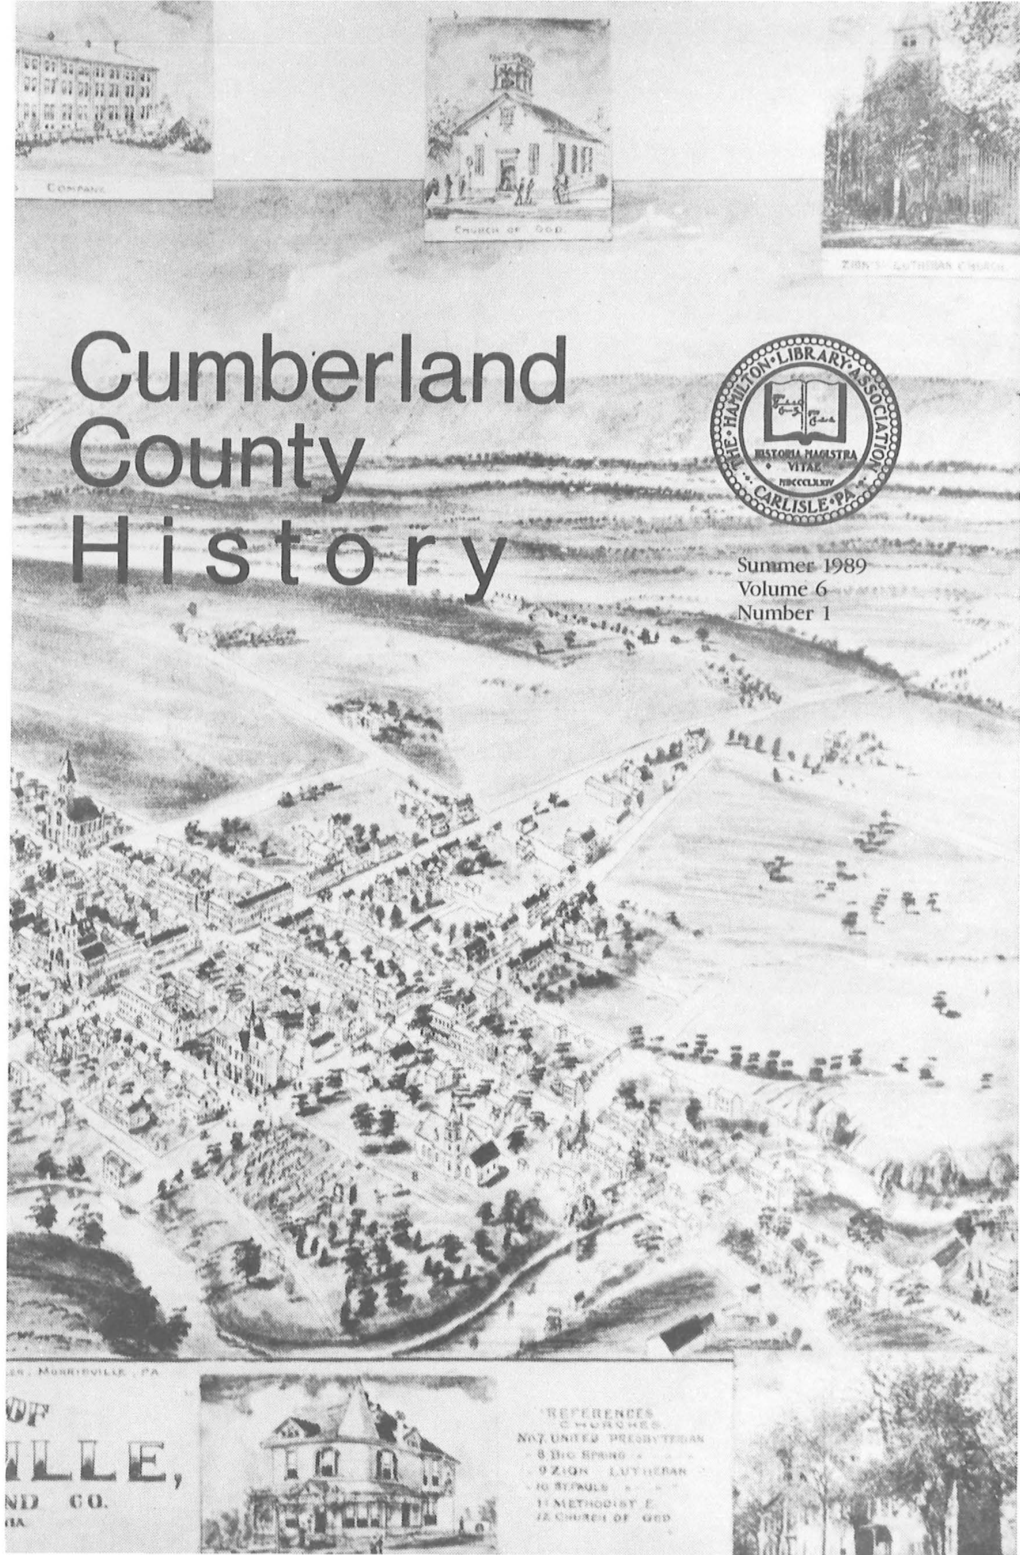 Cumberland•:T ' I> "' '